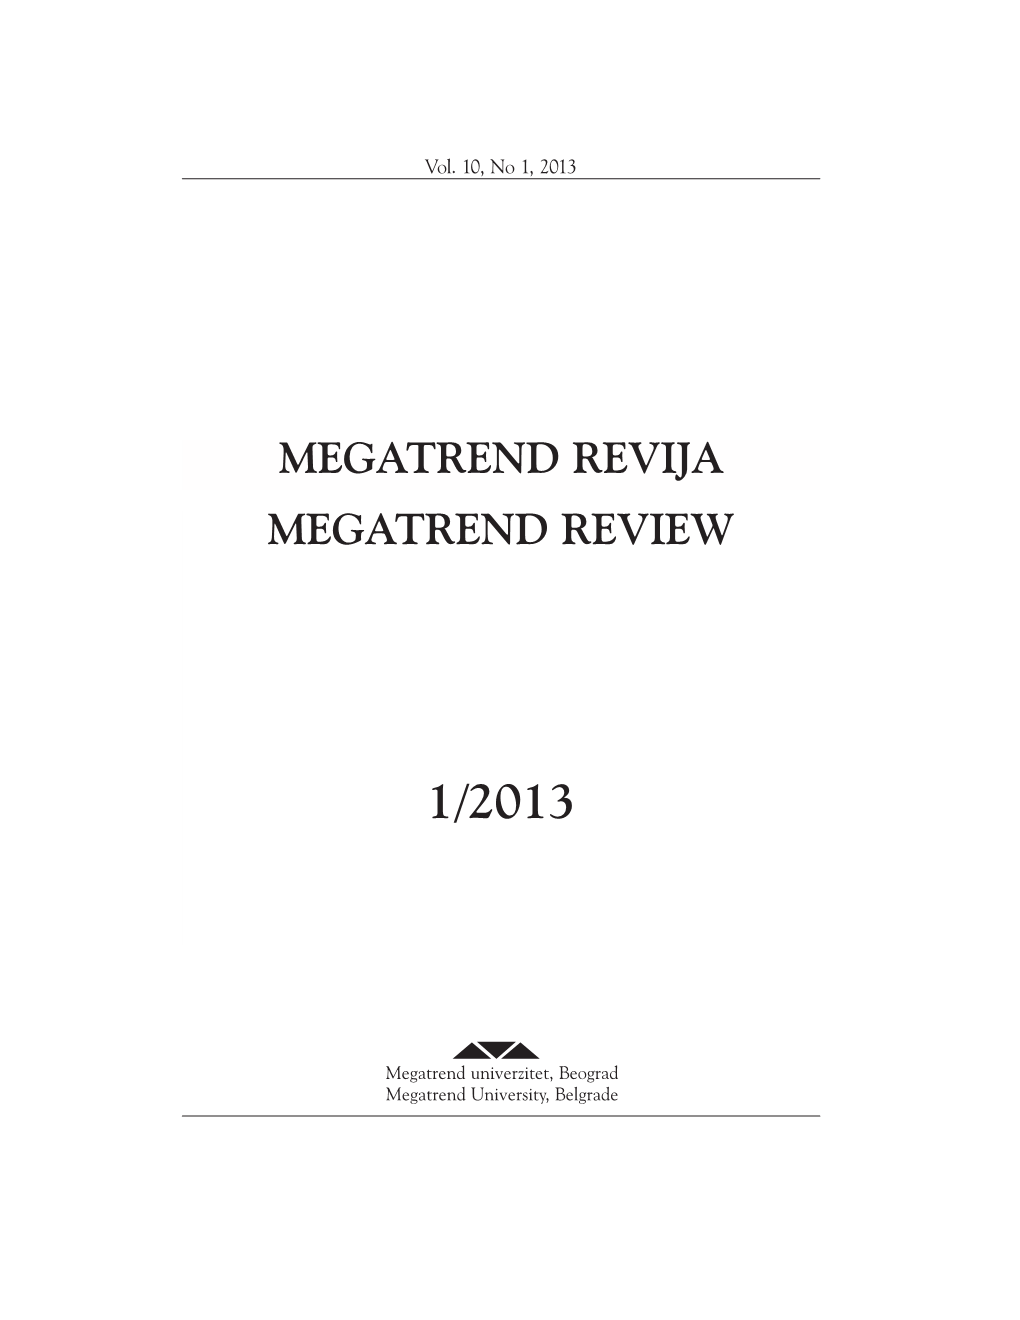 Megatrend Revija Megatrend Review